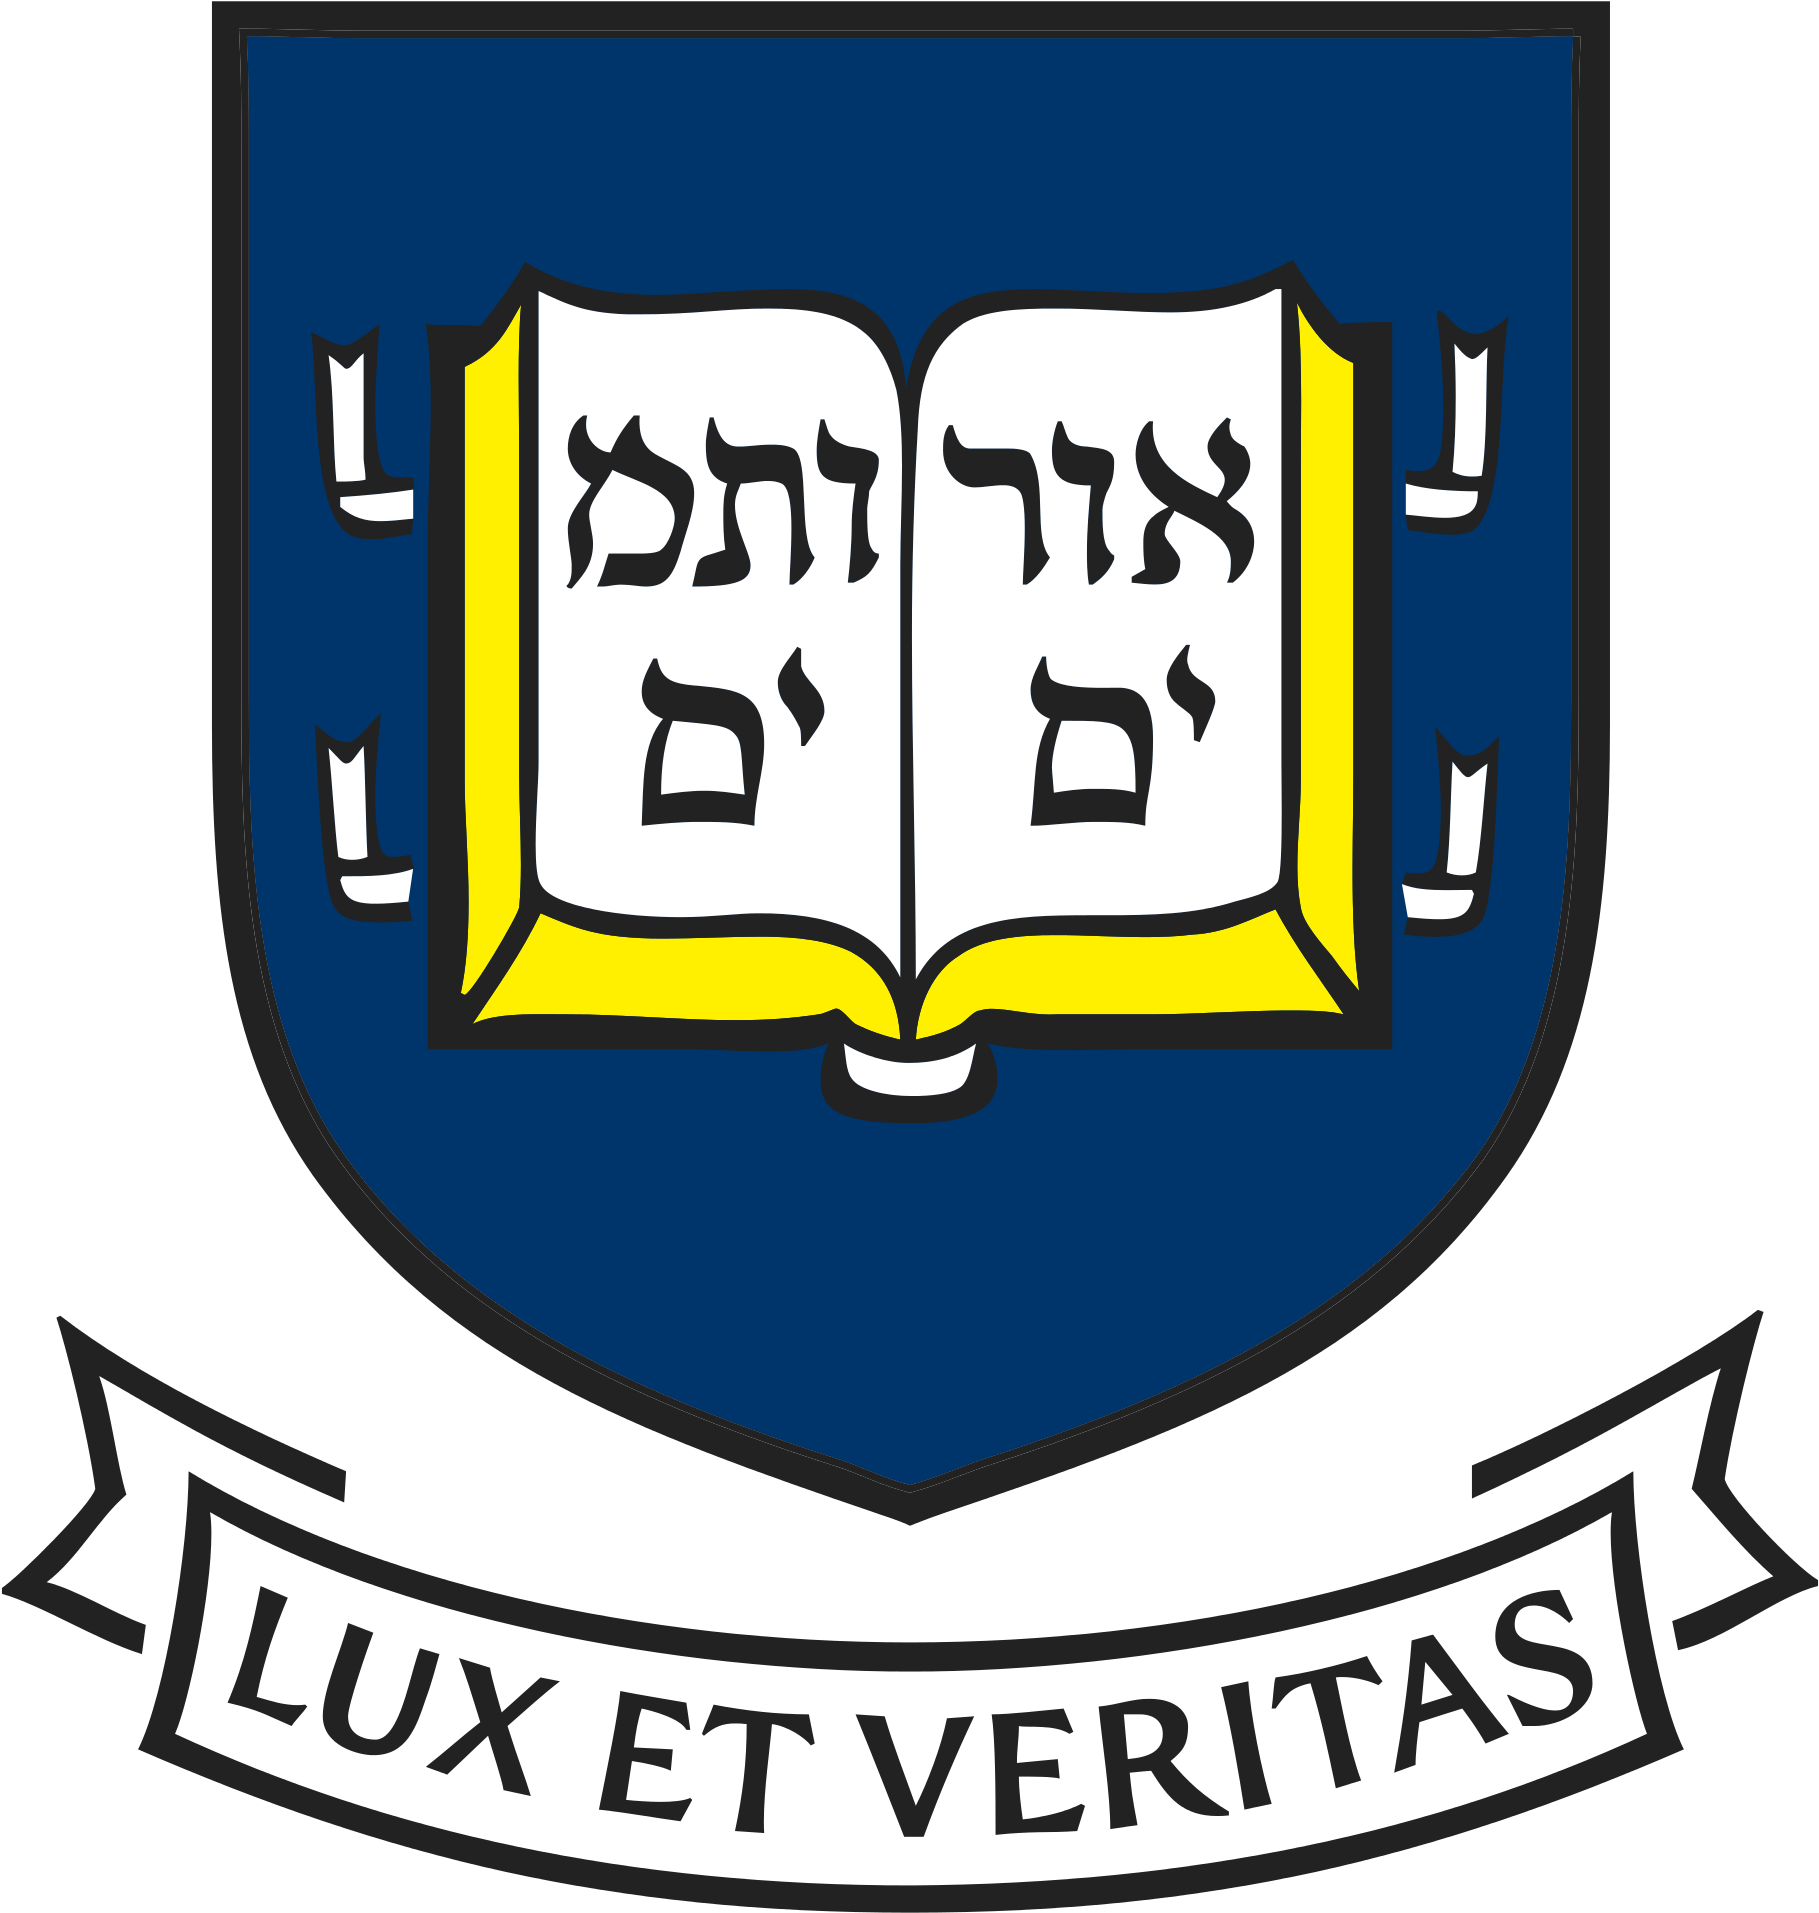 Yale University Logo - University Lux Et Veritas (2000x2000)